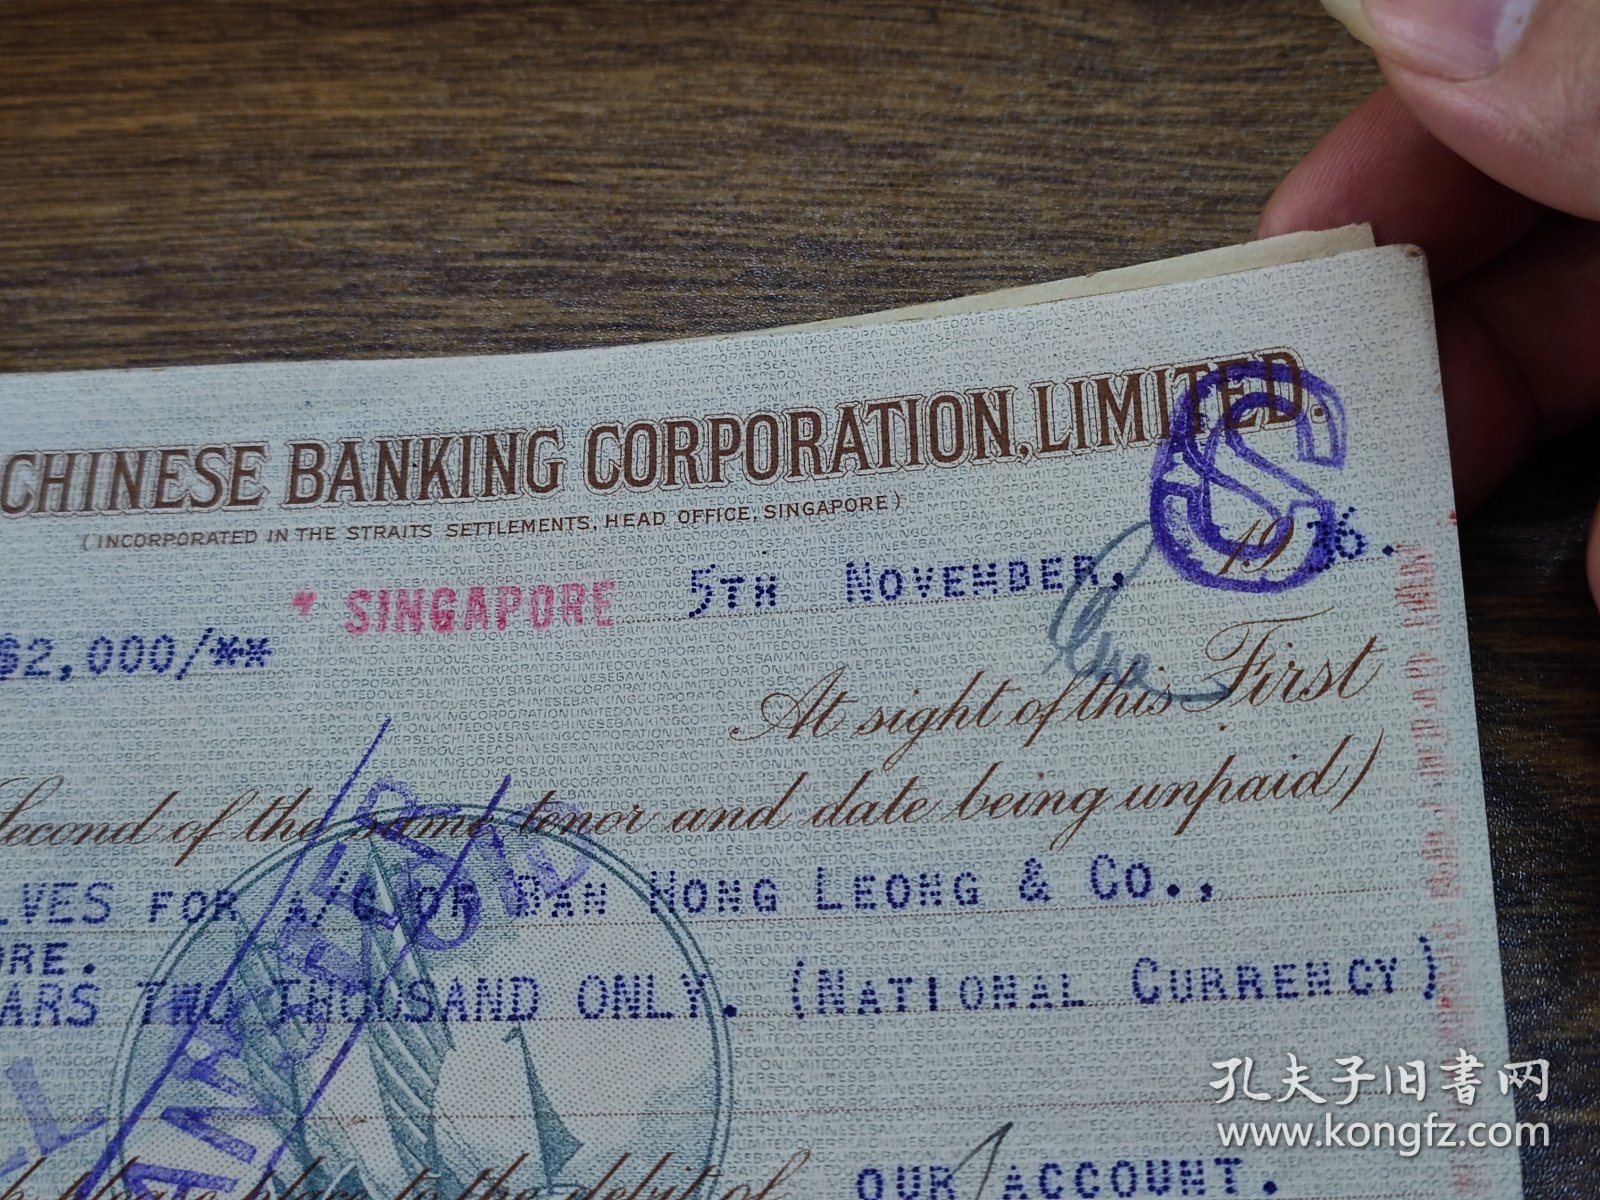 民国25年新加坡华侨银行汇票三联合一份（厦门兑付）~~第一联贴海峡殖民地税票，背面有新加坡万丰隆公司印章